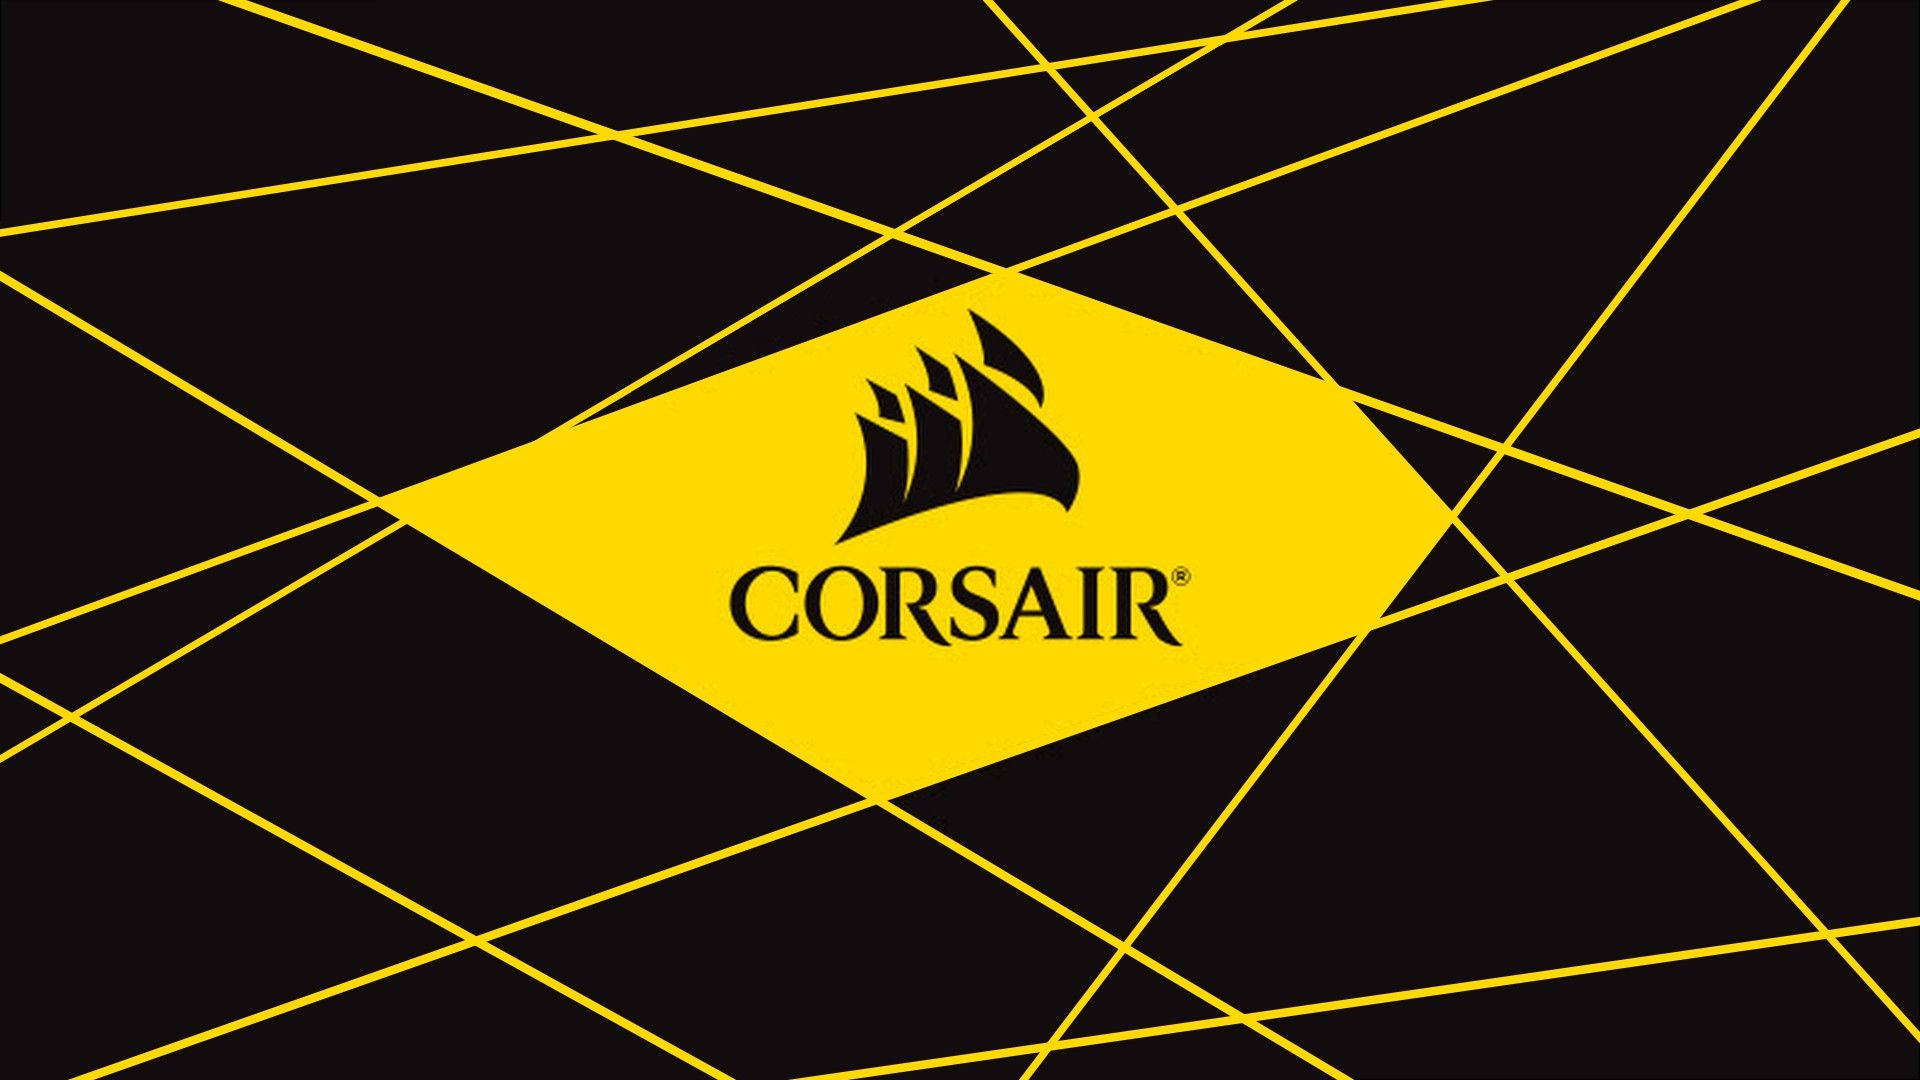 Corsair Background Photos